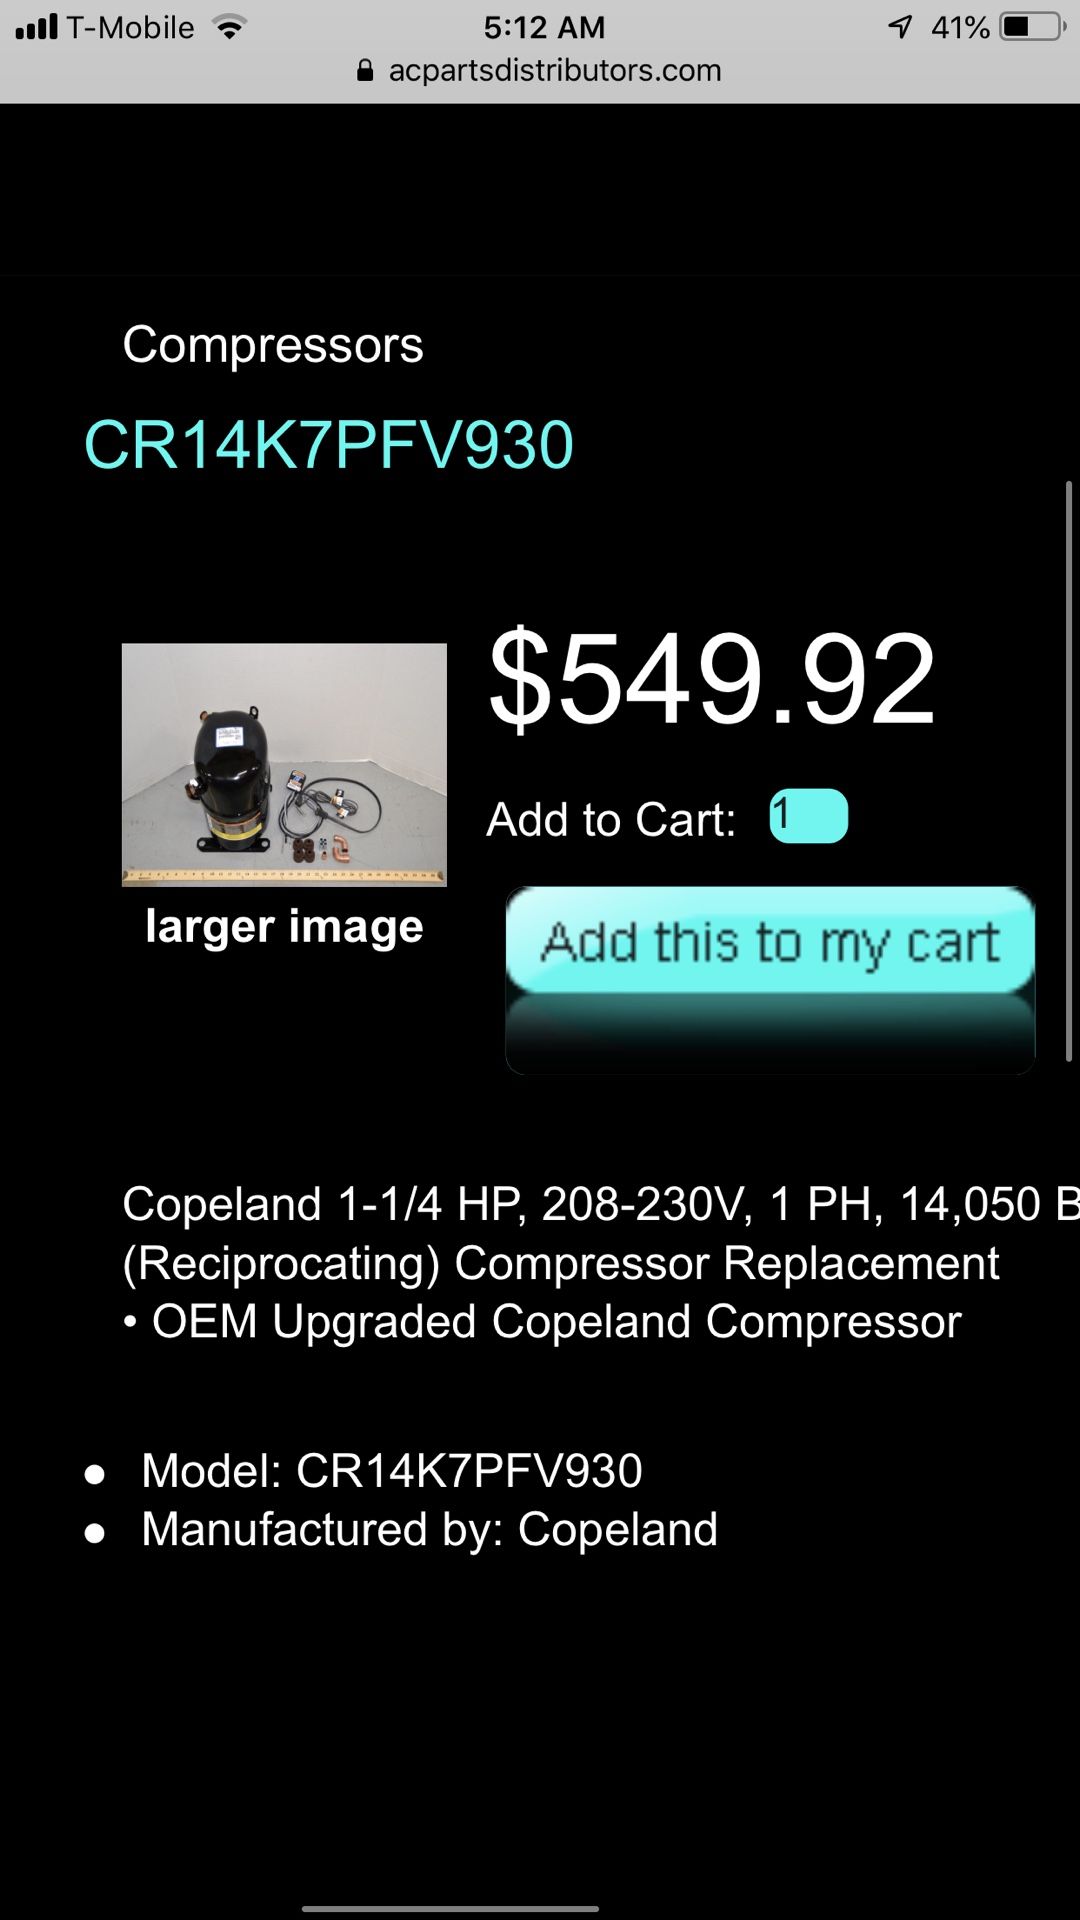 Copeland Compressor CR14k7pfv930